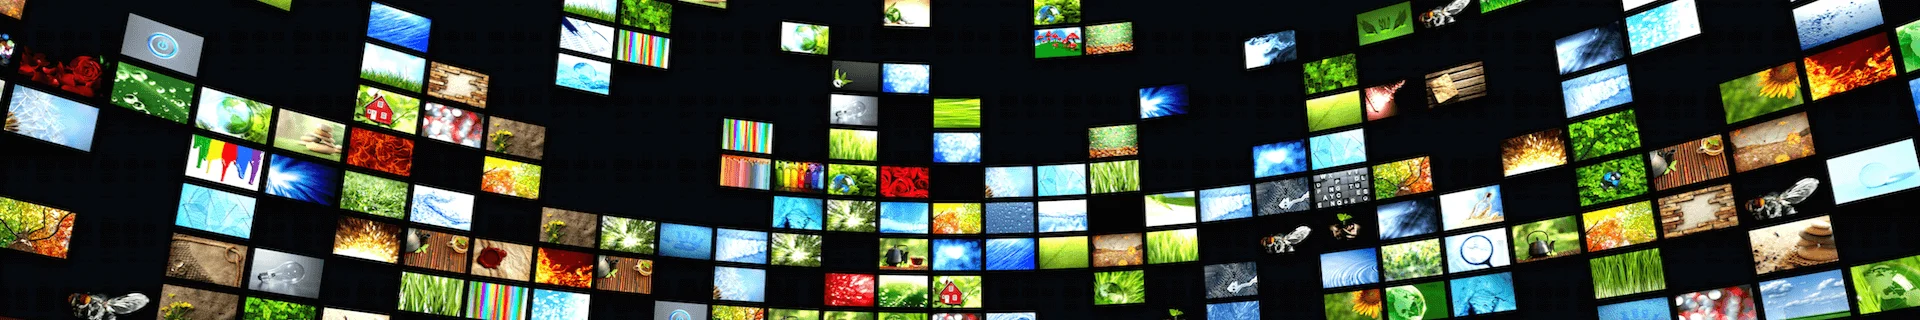 many-TVs-Adobe-1920x1080_iomwdz